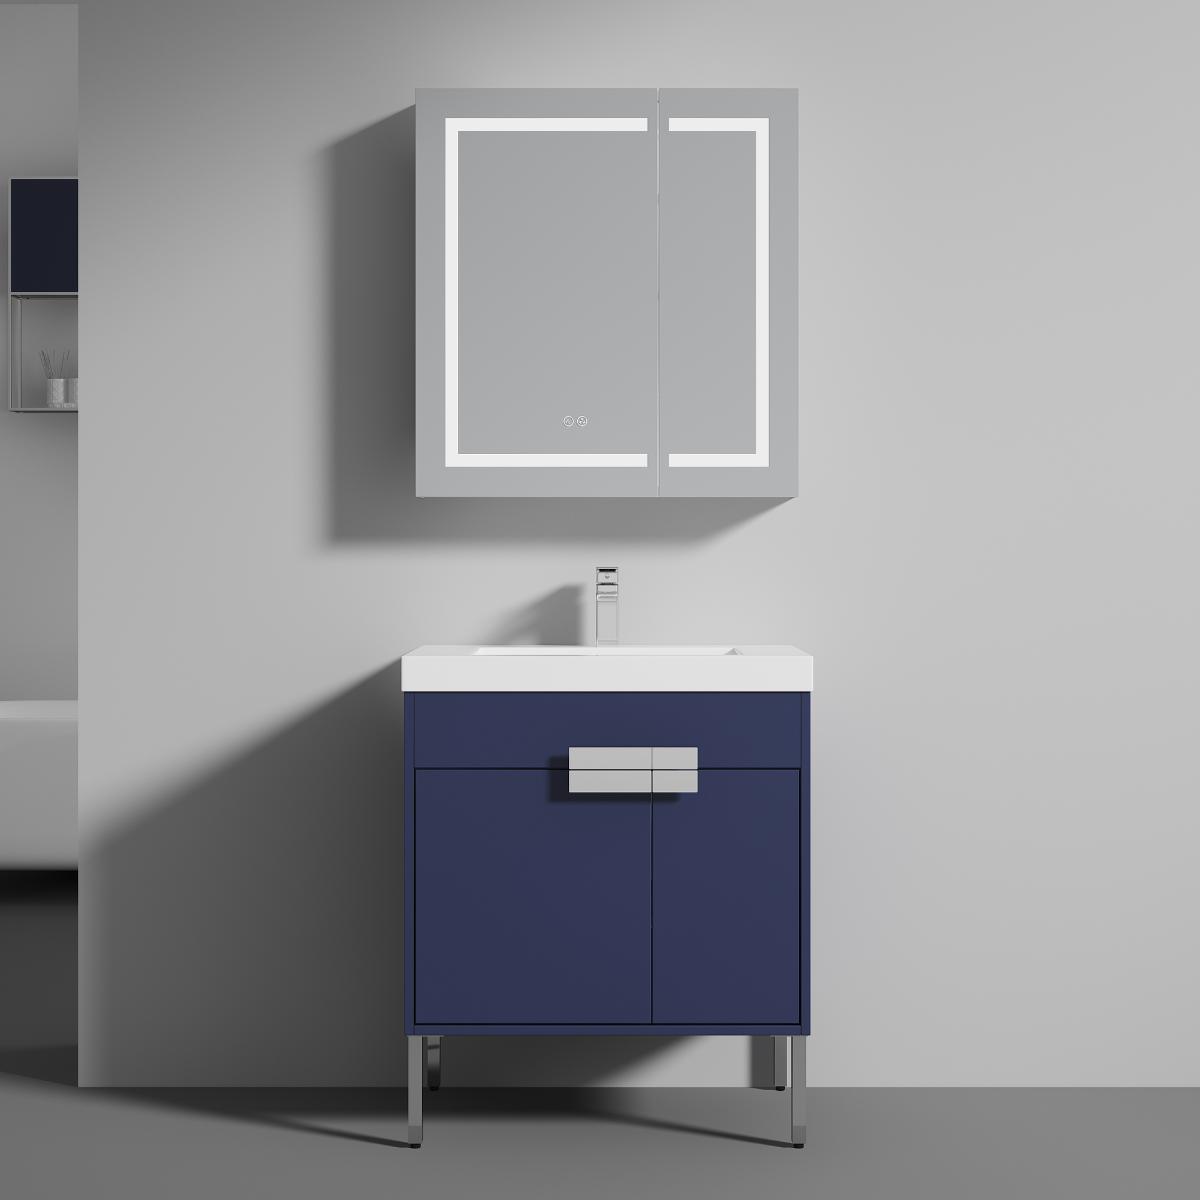 Bari 30" Bathroom Vanity  #size_30"  #color_navy blue